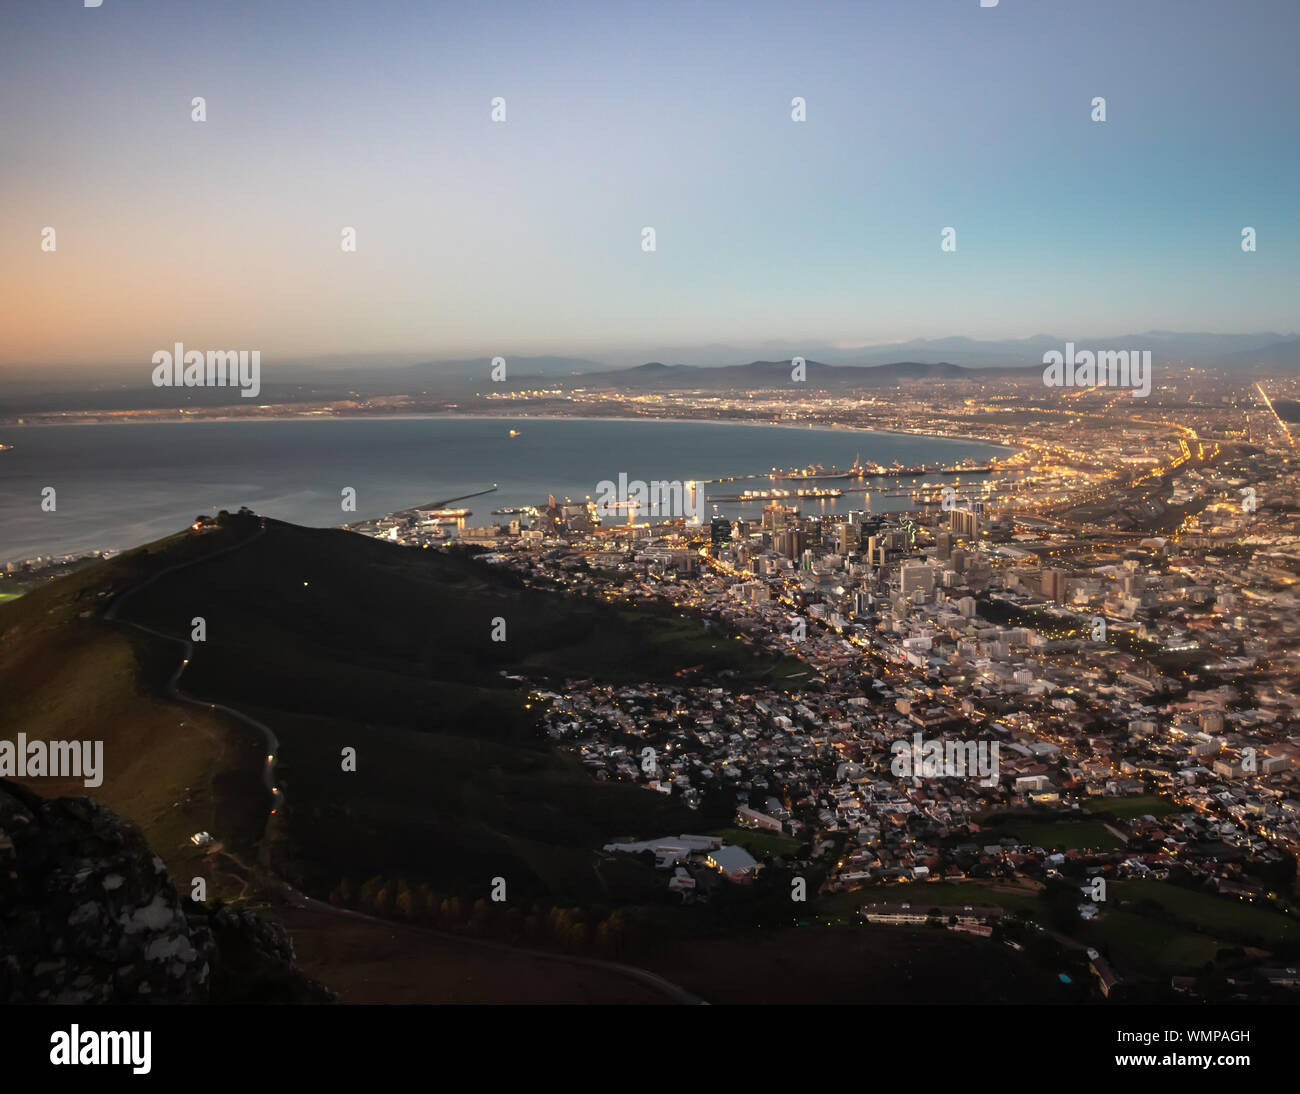 Una veduta aerea della capitale legislativa del Sud Africa, la Scenic Cape Town Foto Stock